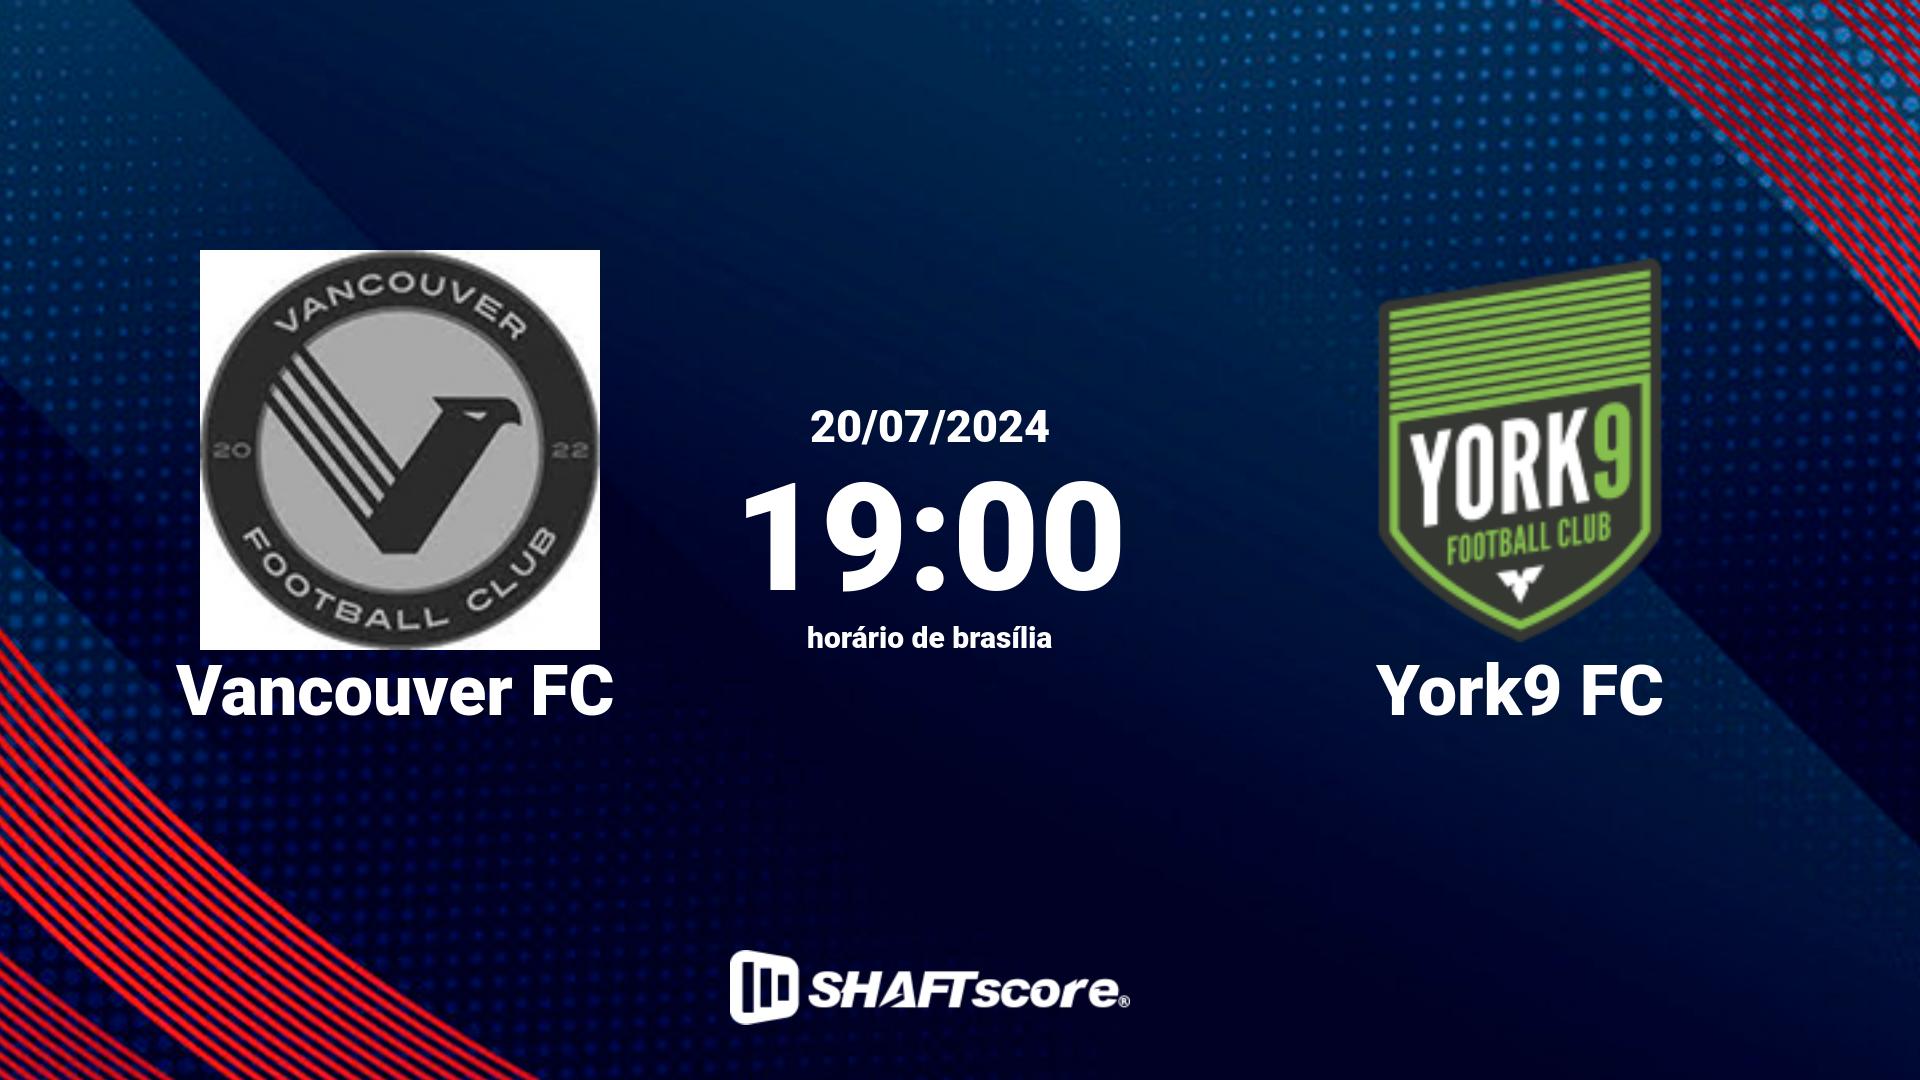 Estatísticas do jogo Vancouver FC vs York9 FC 20.07 19:00